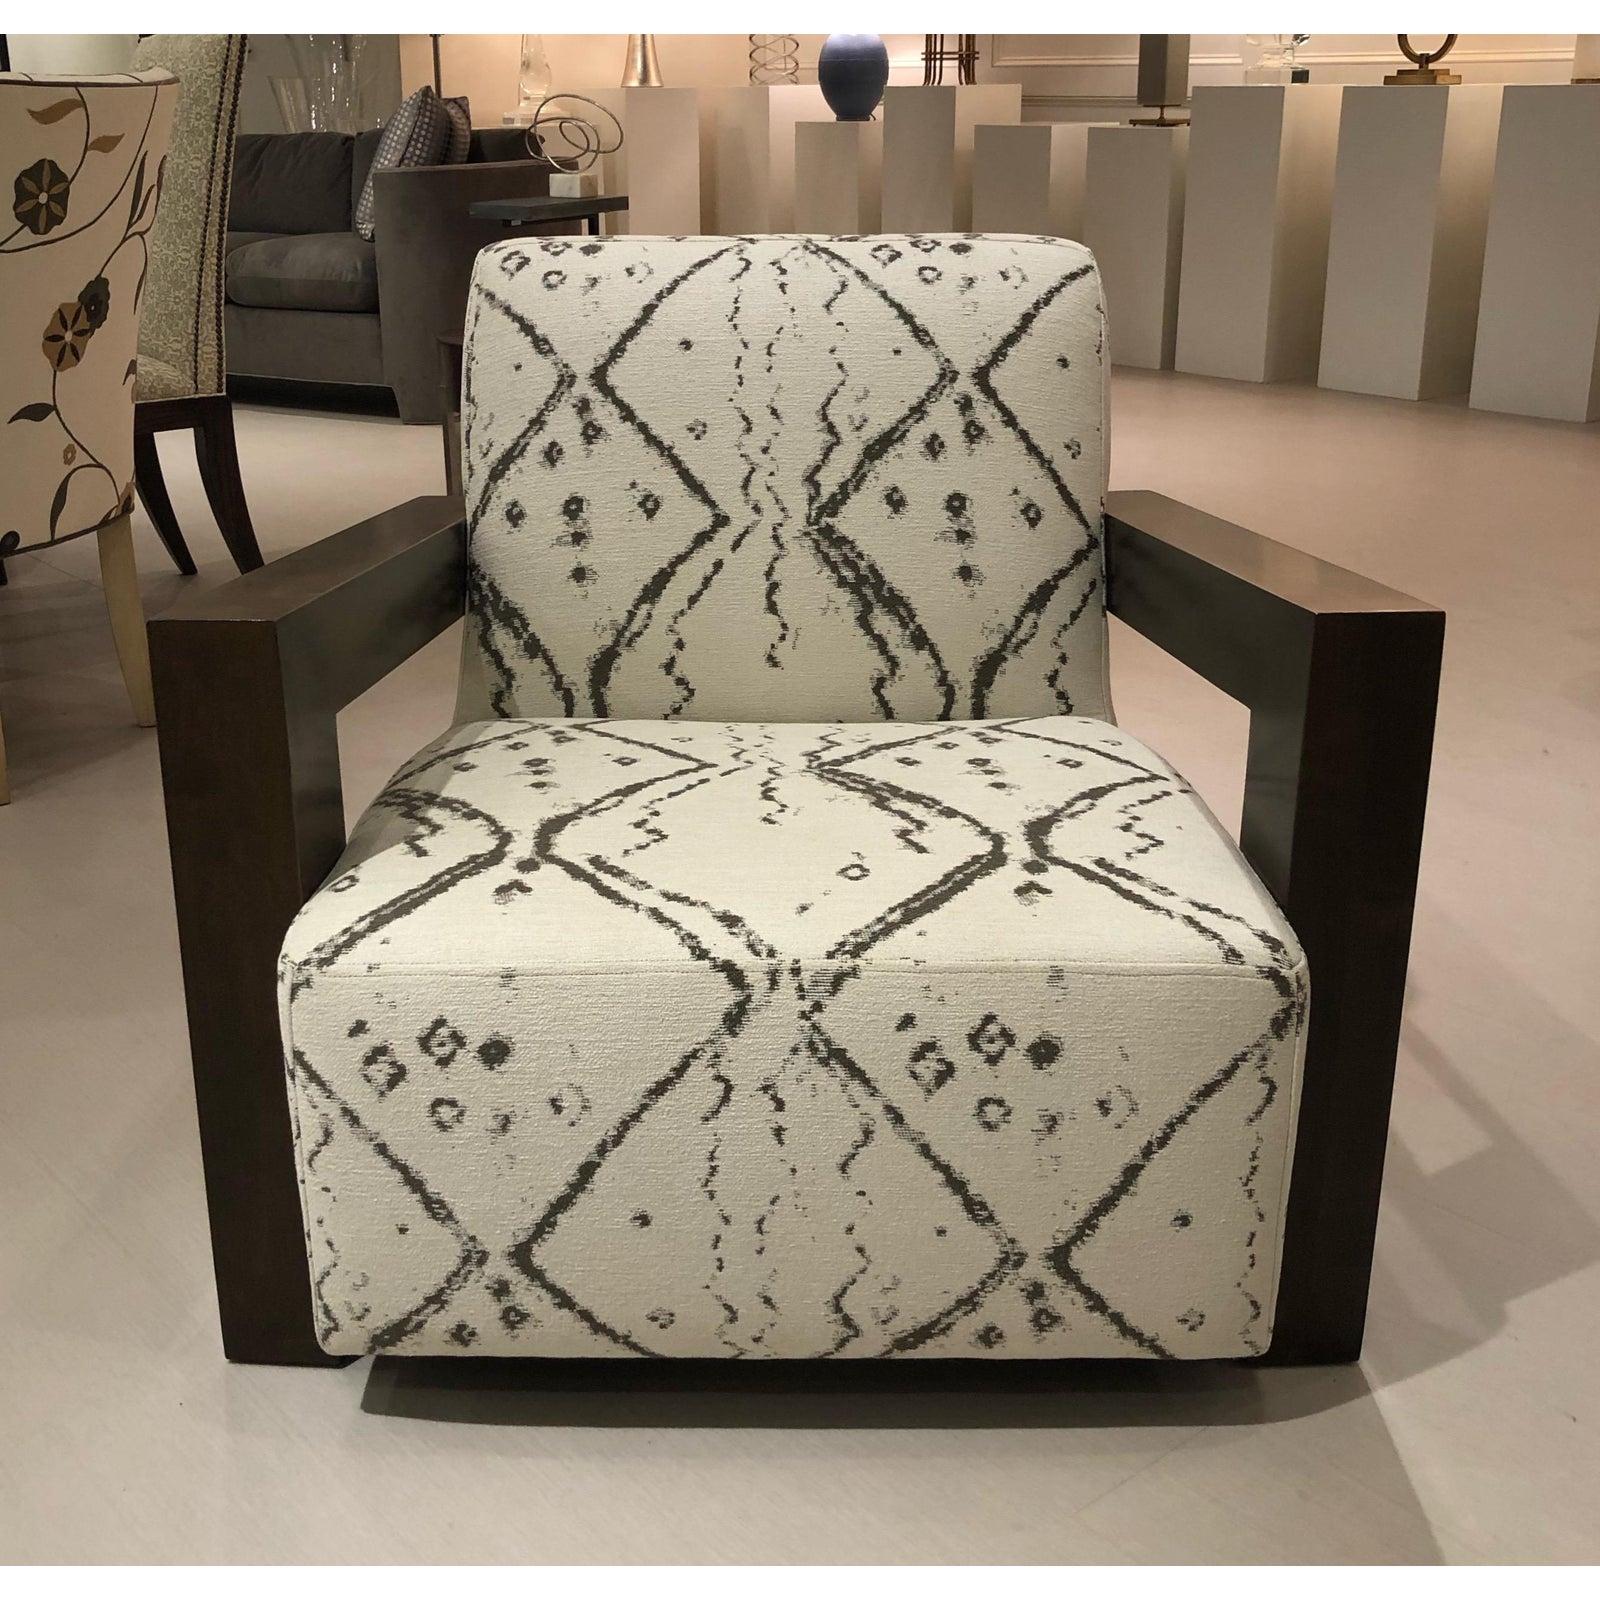 Neuf de salle d'exposition. Nathan Anthony est connu pour ses conceptions de meubles primées. La chaise Kinetic a un style moderne mais s'adapte facilement à un environnement plus transitoire ou même rustique. La chaise est dotée d'un cadre en bois